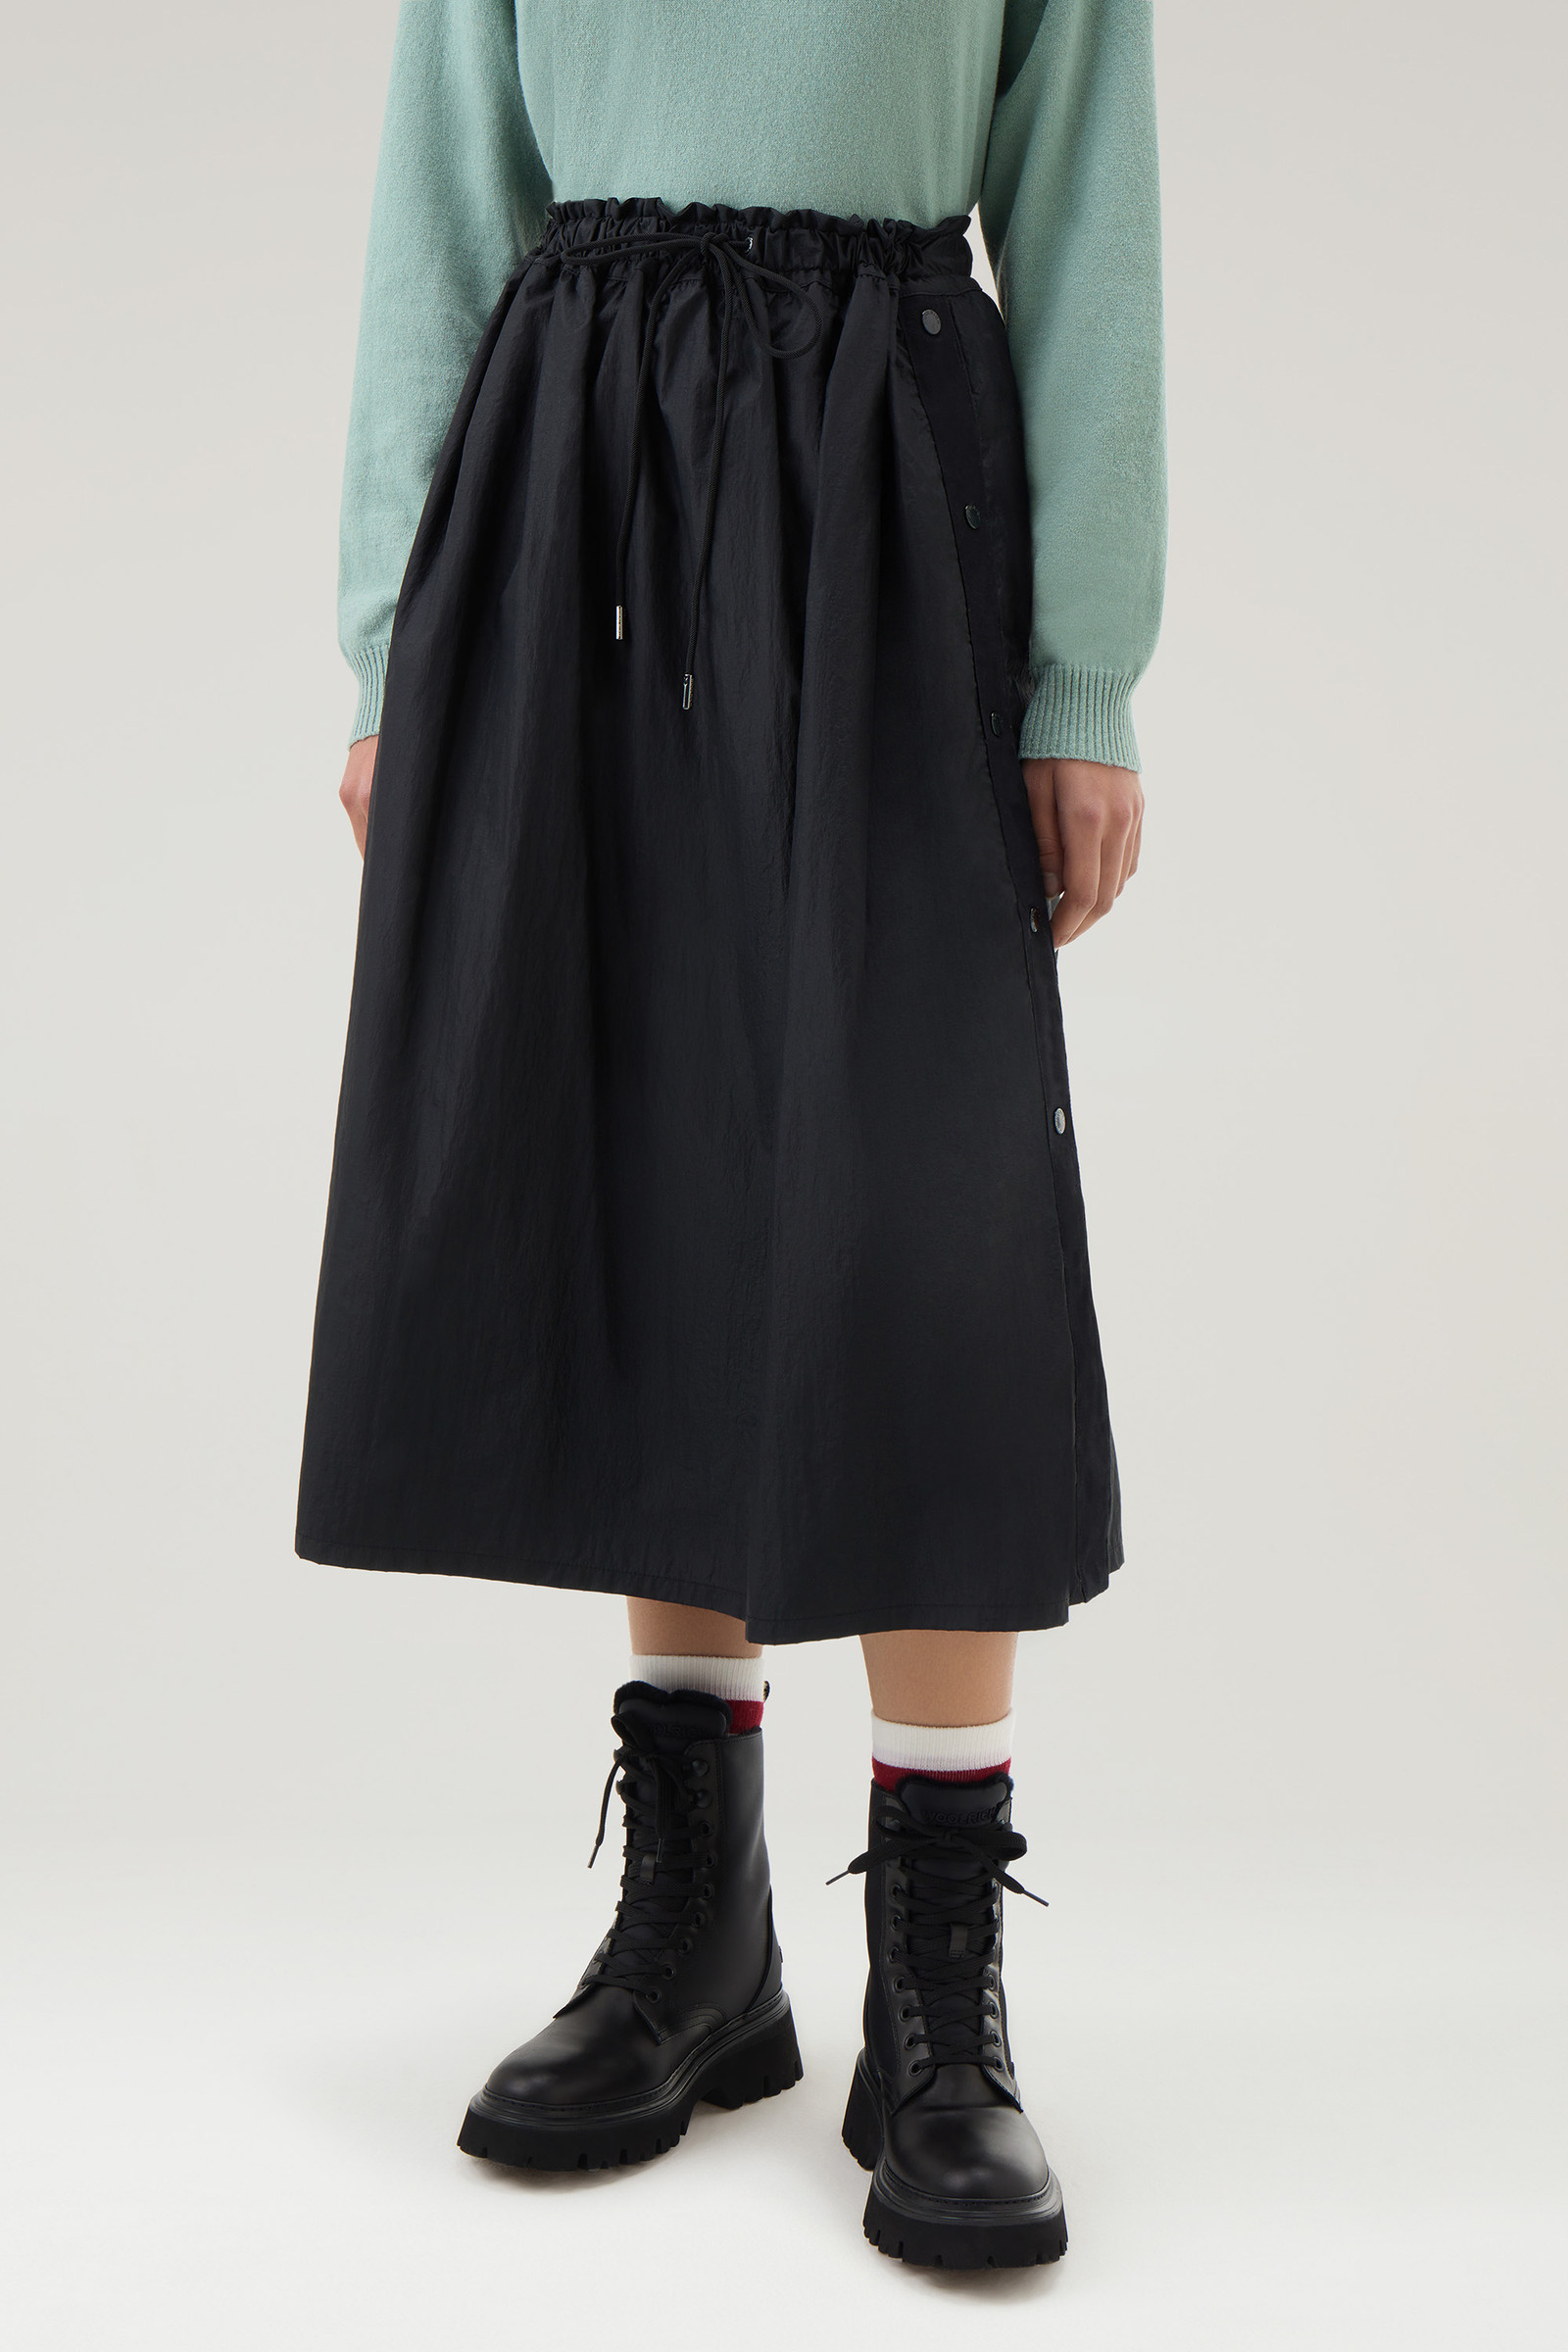 Women's Skirt in Crinkle Satin Nylon Black | Woolrich USA